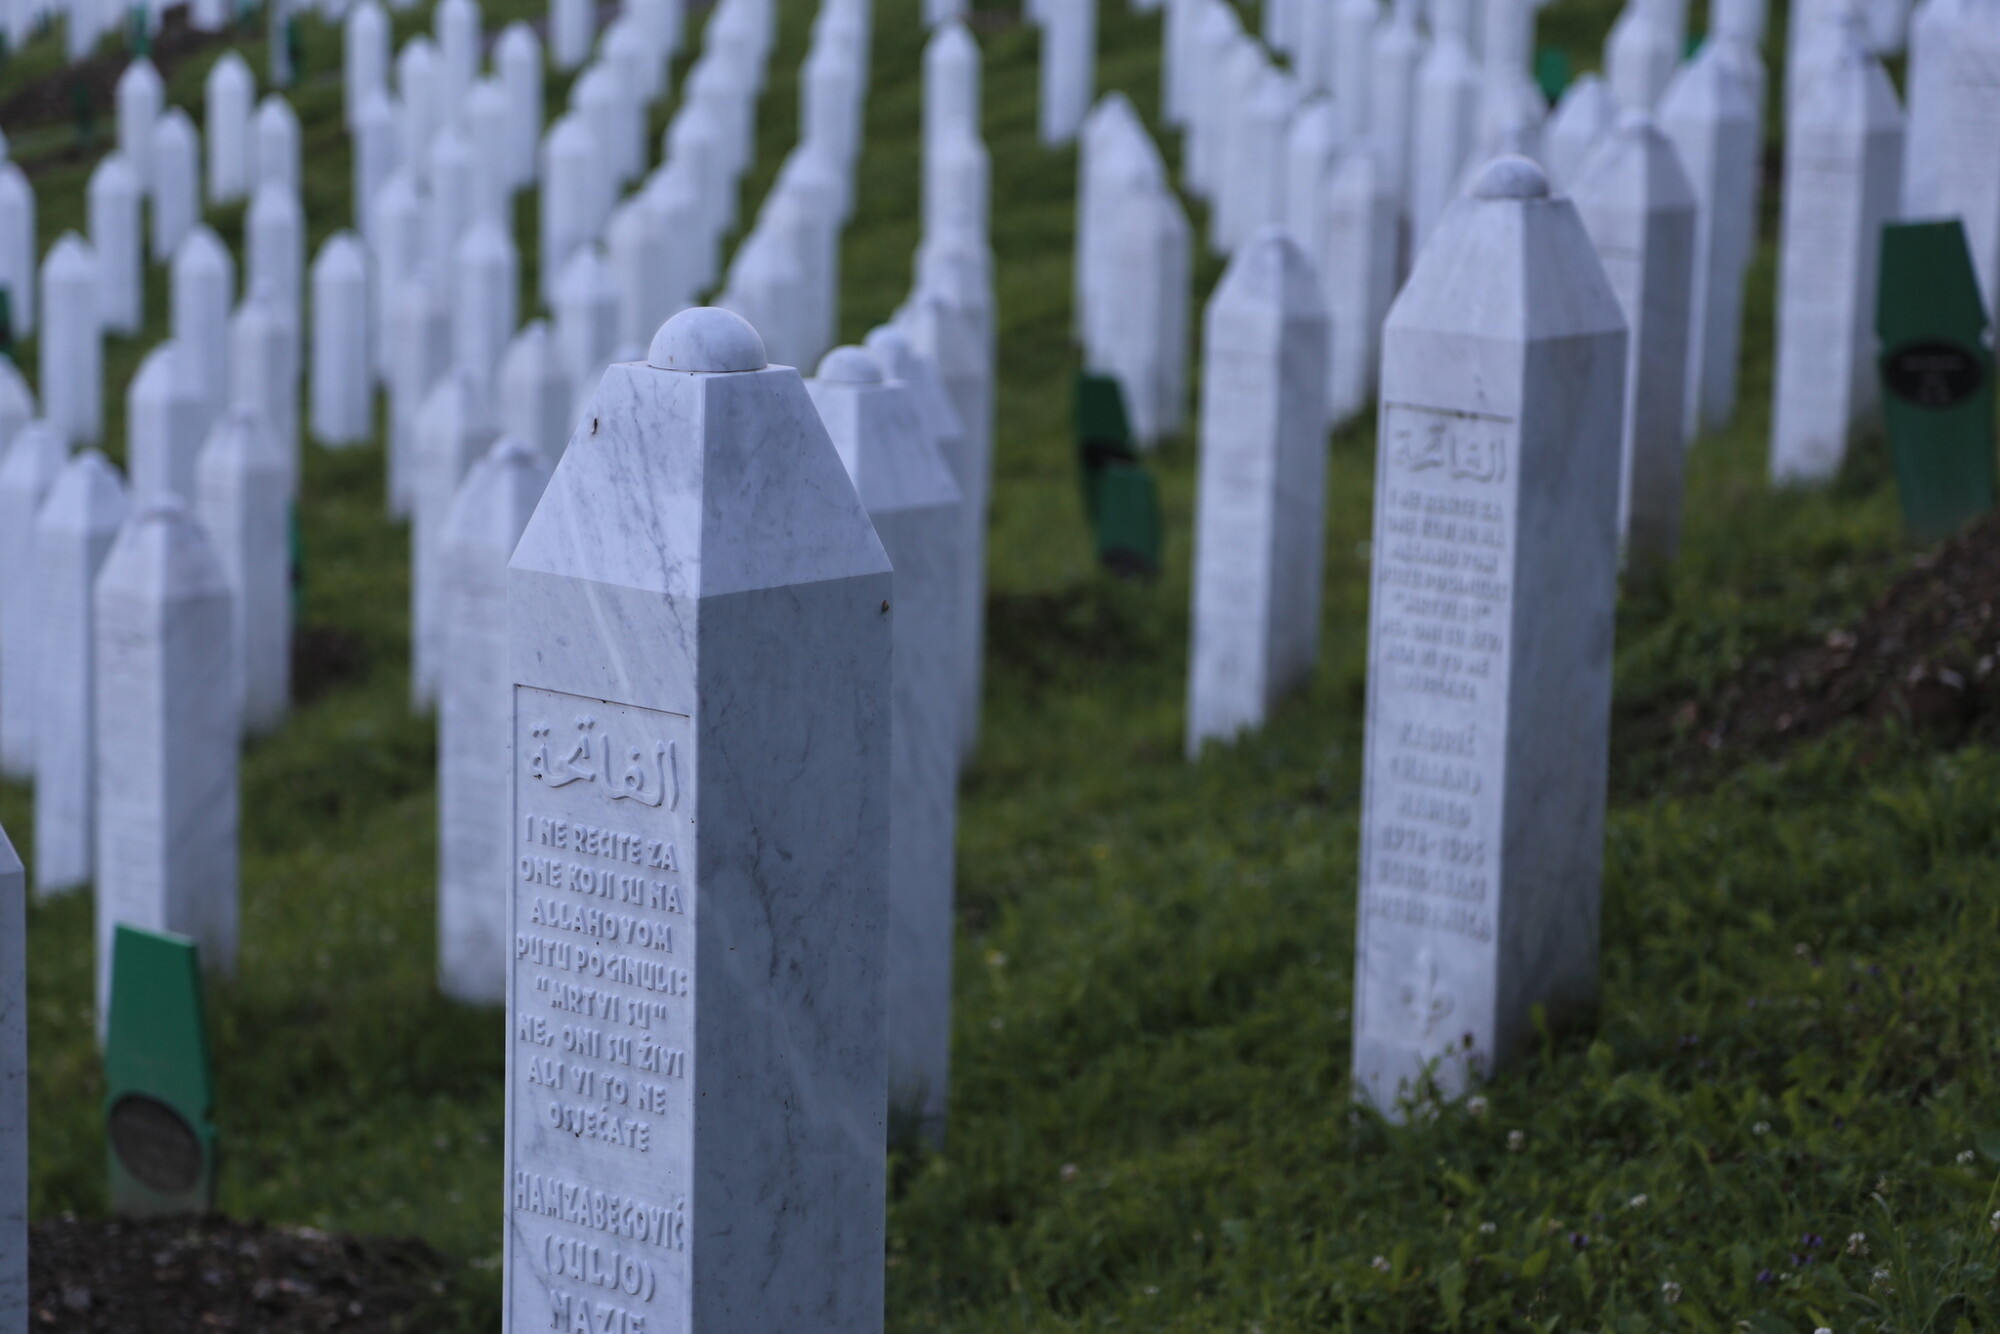 The Srebrenica-Potočari Memorial and Cemetery for the victims of the 1995 genocide.